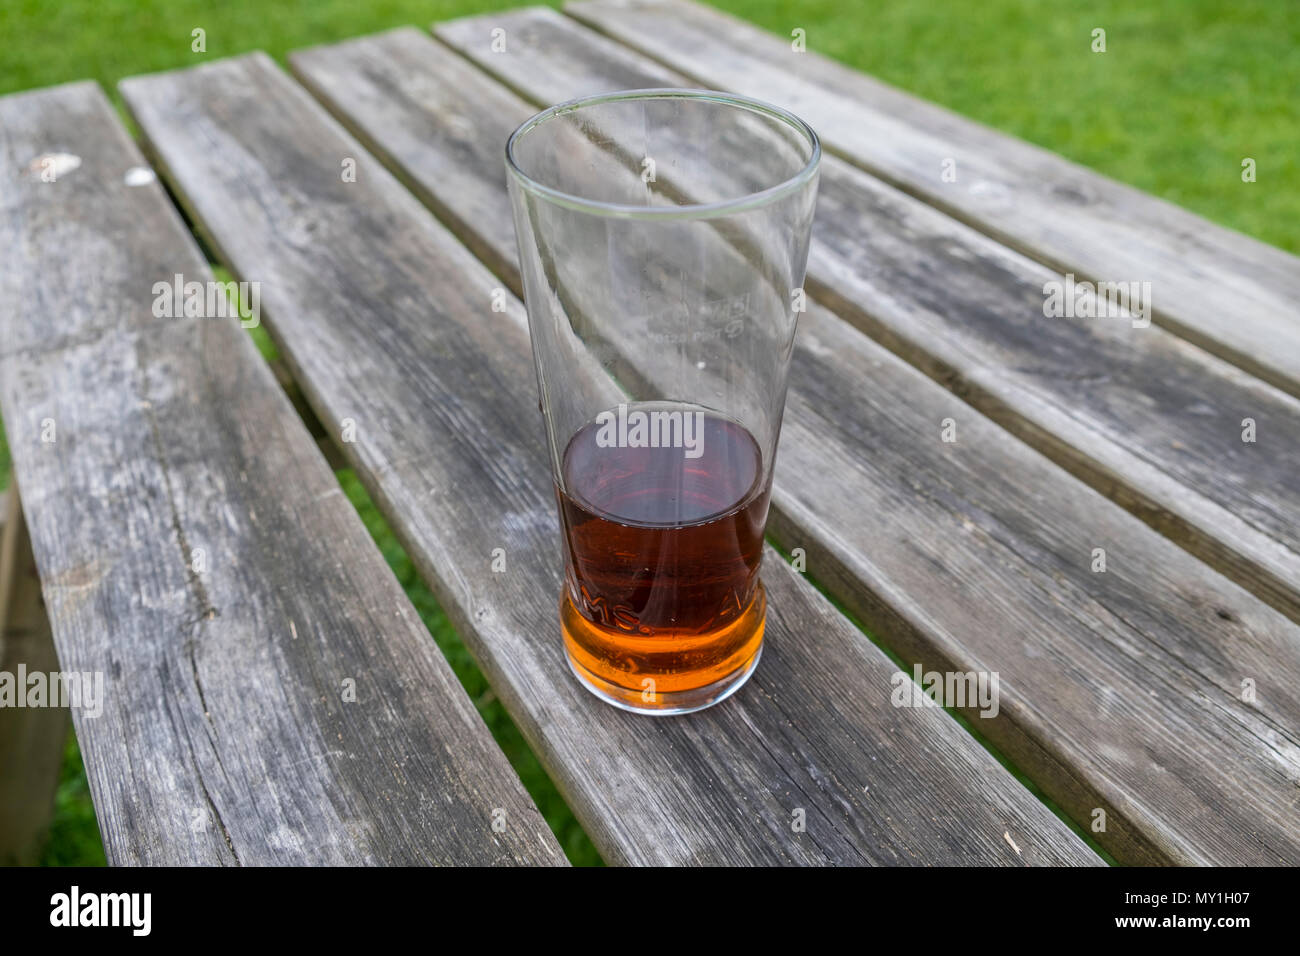 Halb voll Pint Adnams bitter auf einem pub Tabelle. Übersicht Glas halb voll oder halb leer ist. Suffolk, Großbritannien. Stockfoto